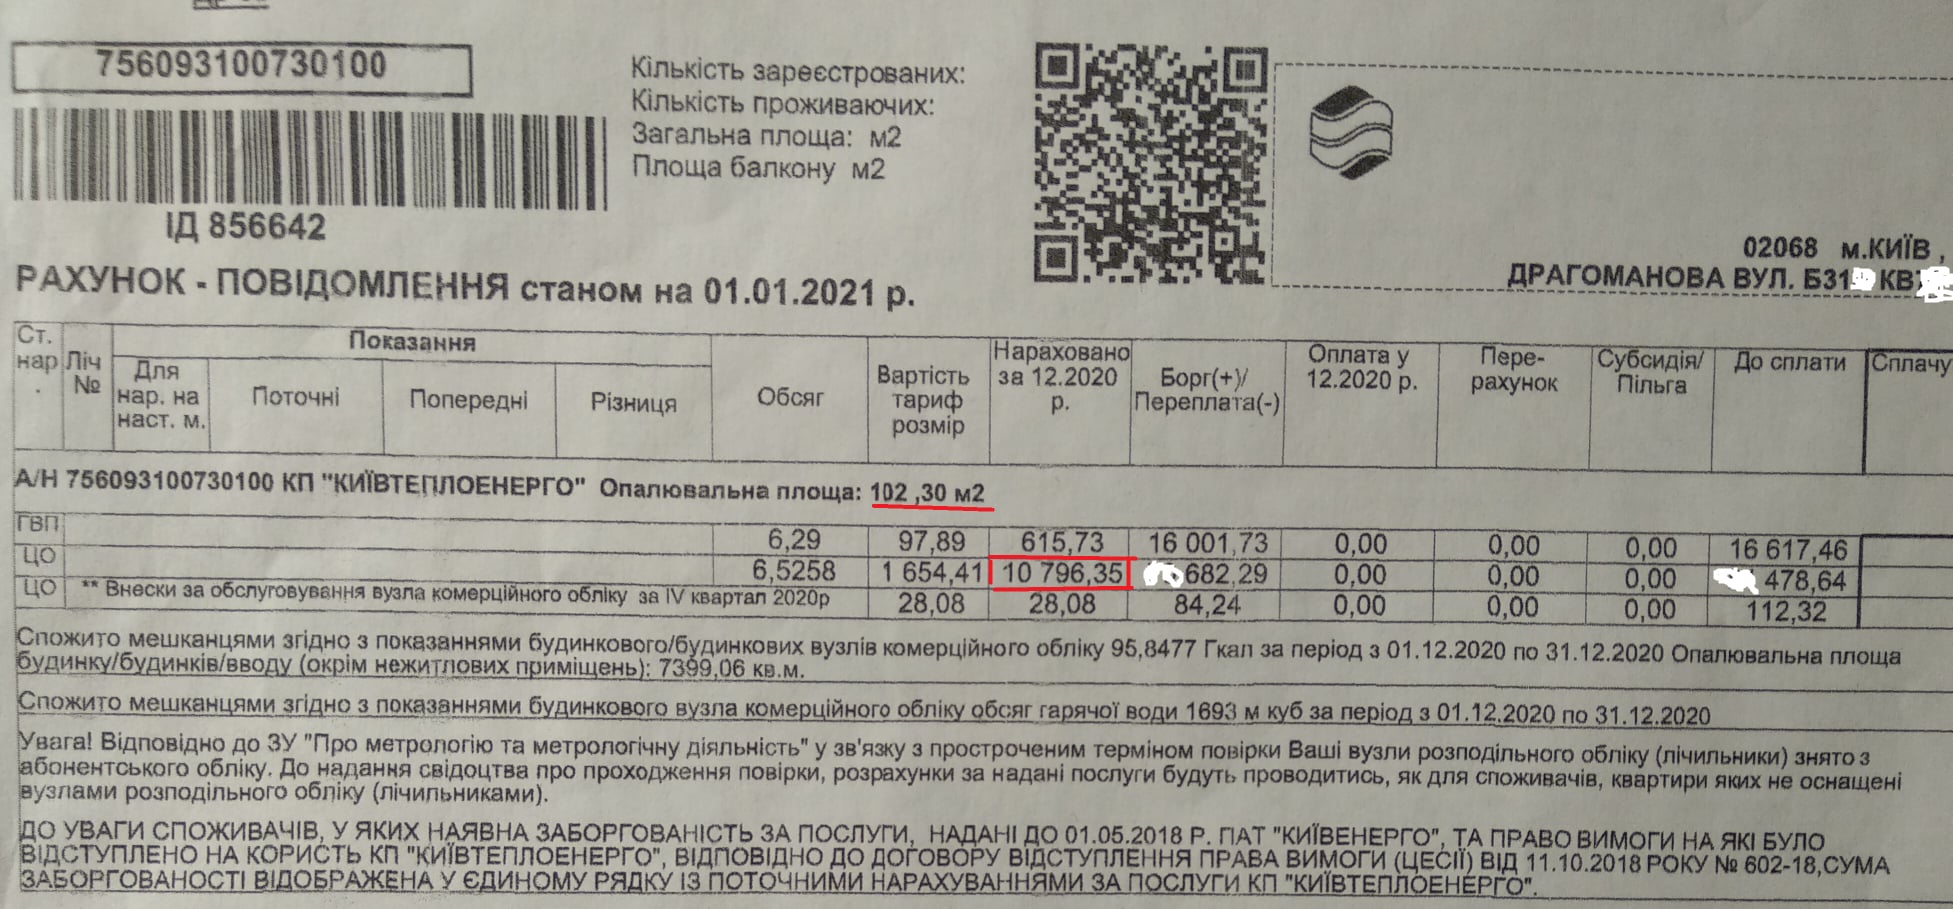 Пенсионеру из Киева пришла платежка за отопление на сумму около 11 тысяч гривен. Скриншот: Фейсбук/ Станислав Липовский